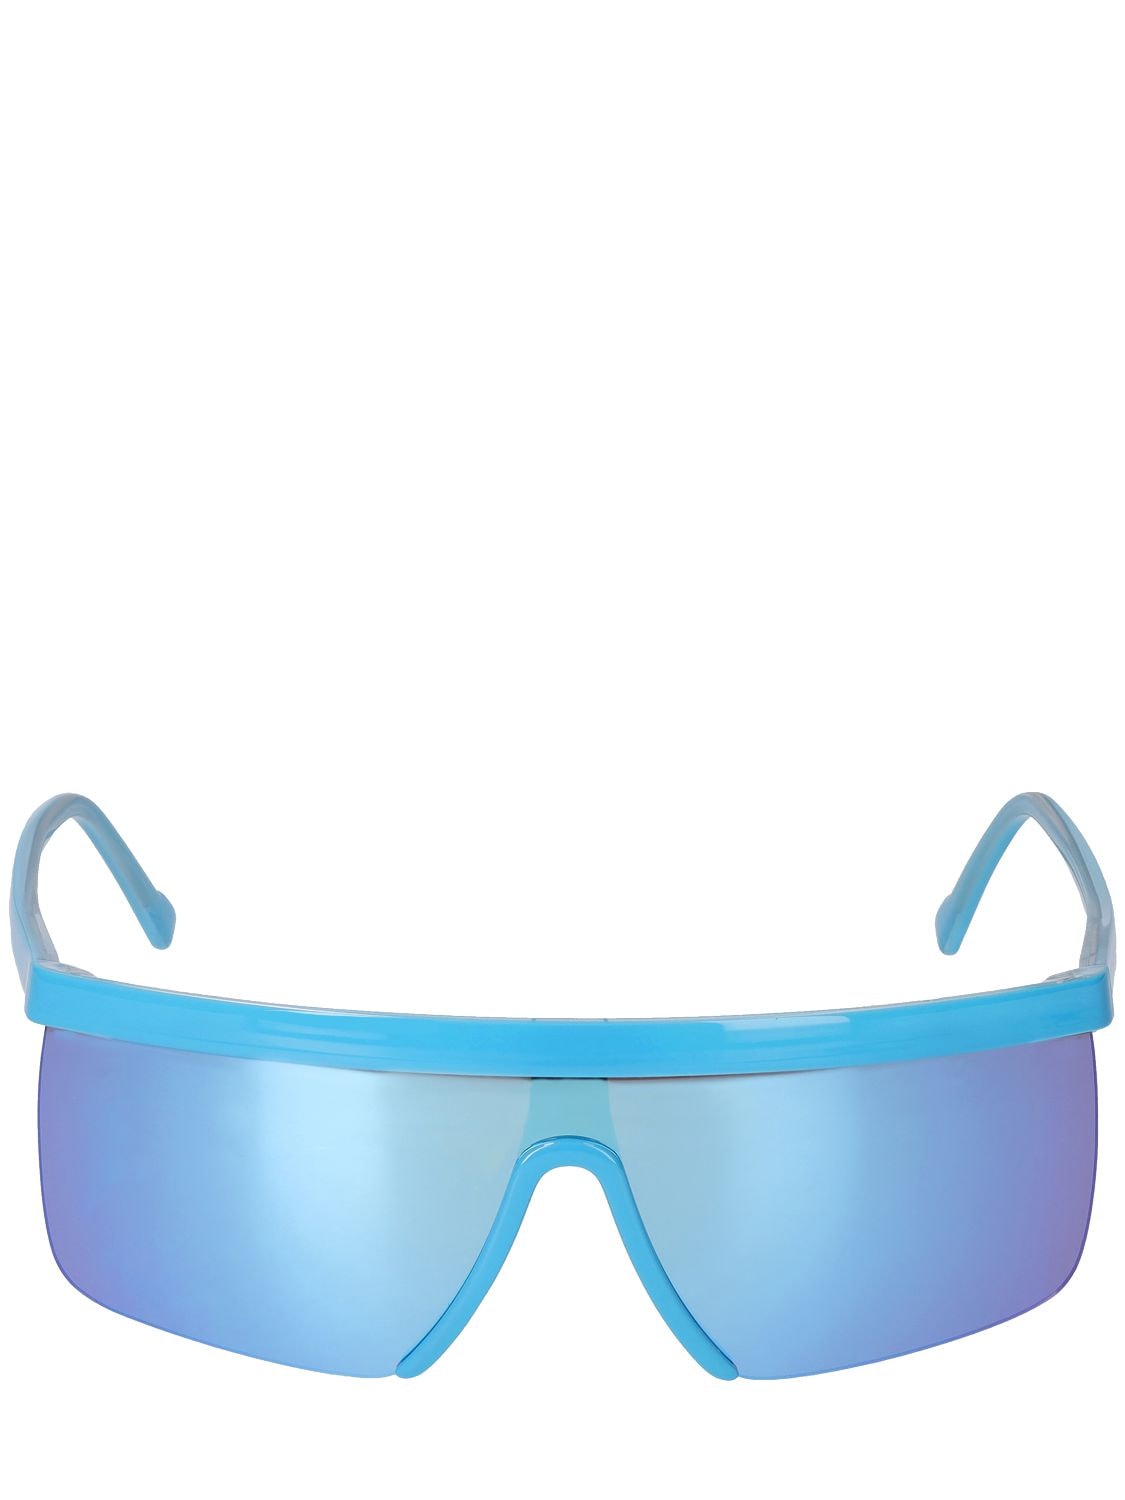 Giuseppe Di Morabito Mask Acetate Sunglasses W/ Mirror Lens In Blue,mirror